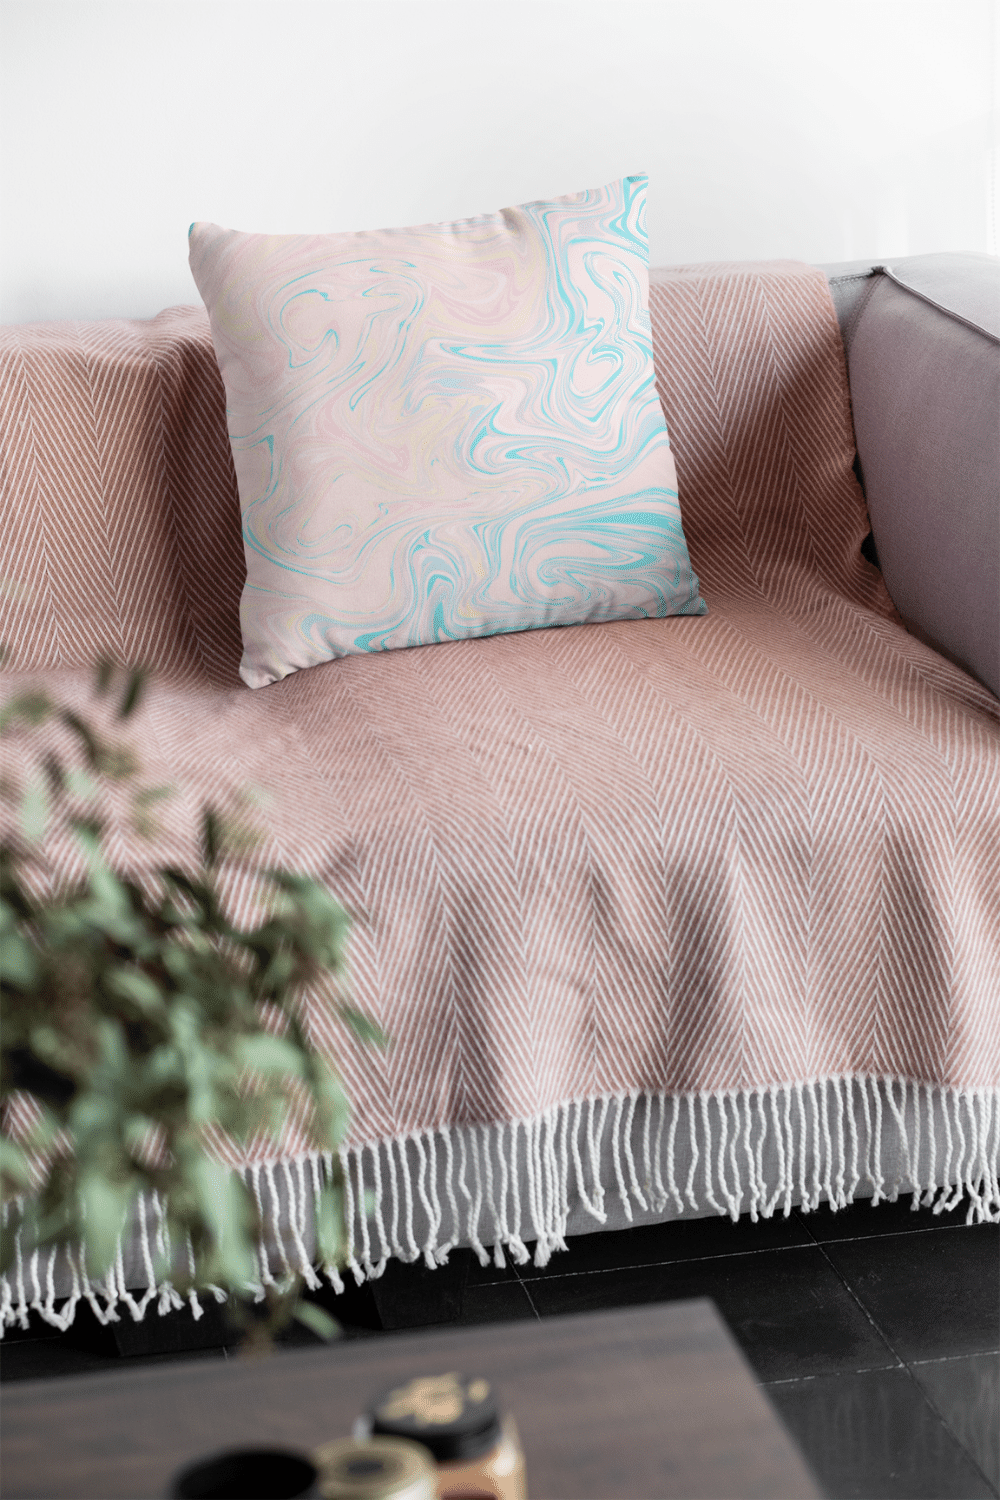 Pillows - Dorm Room Pillow - Pastel Paint Swirls